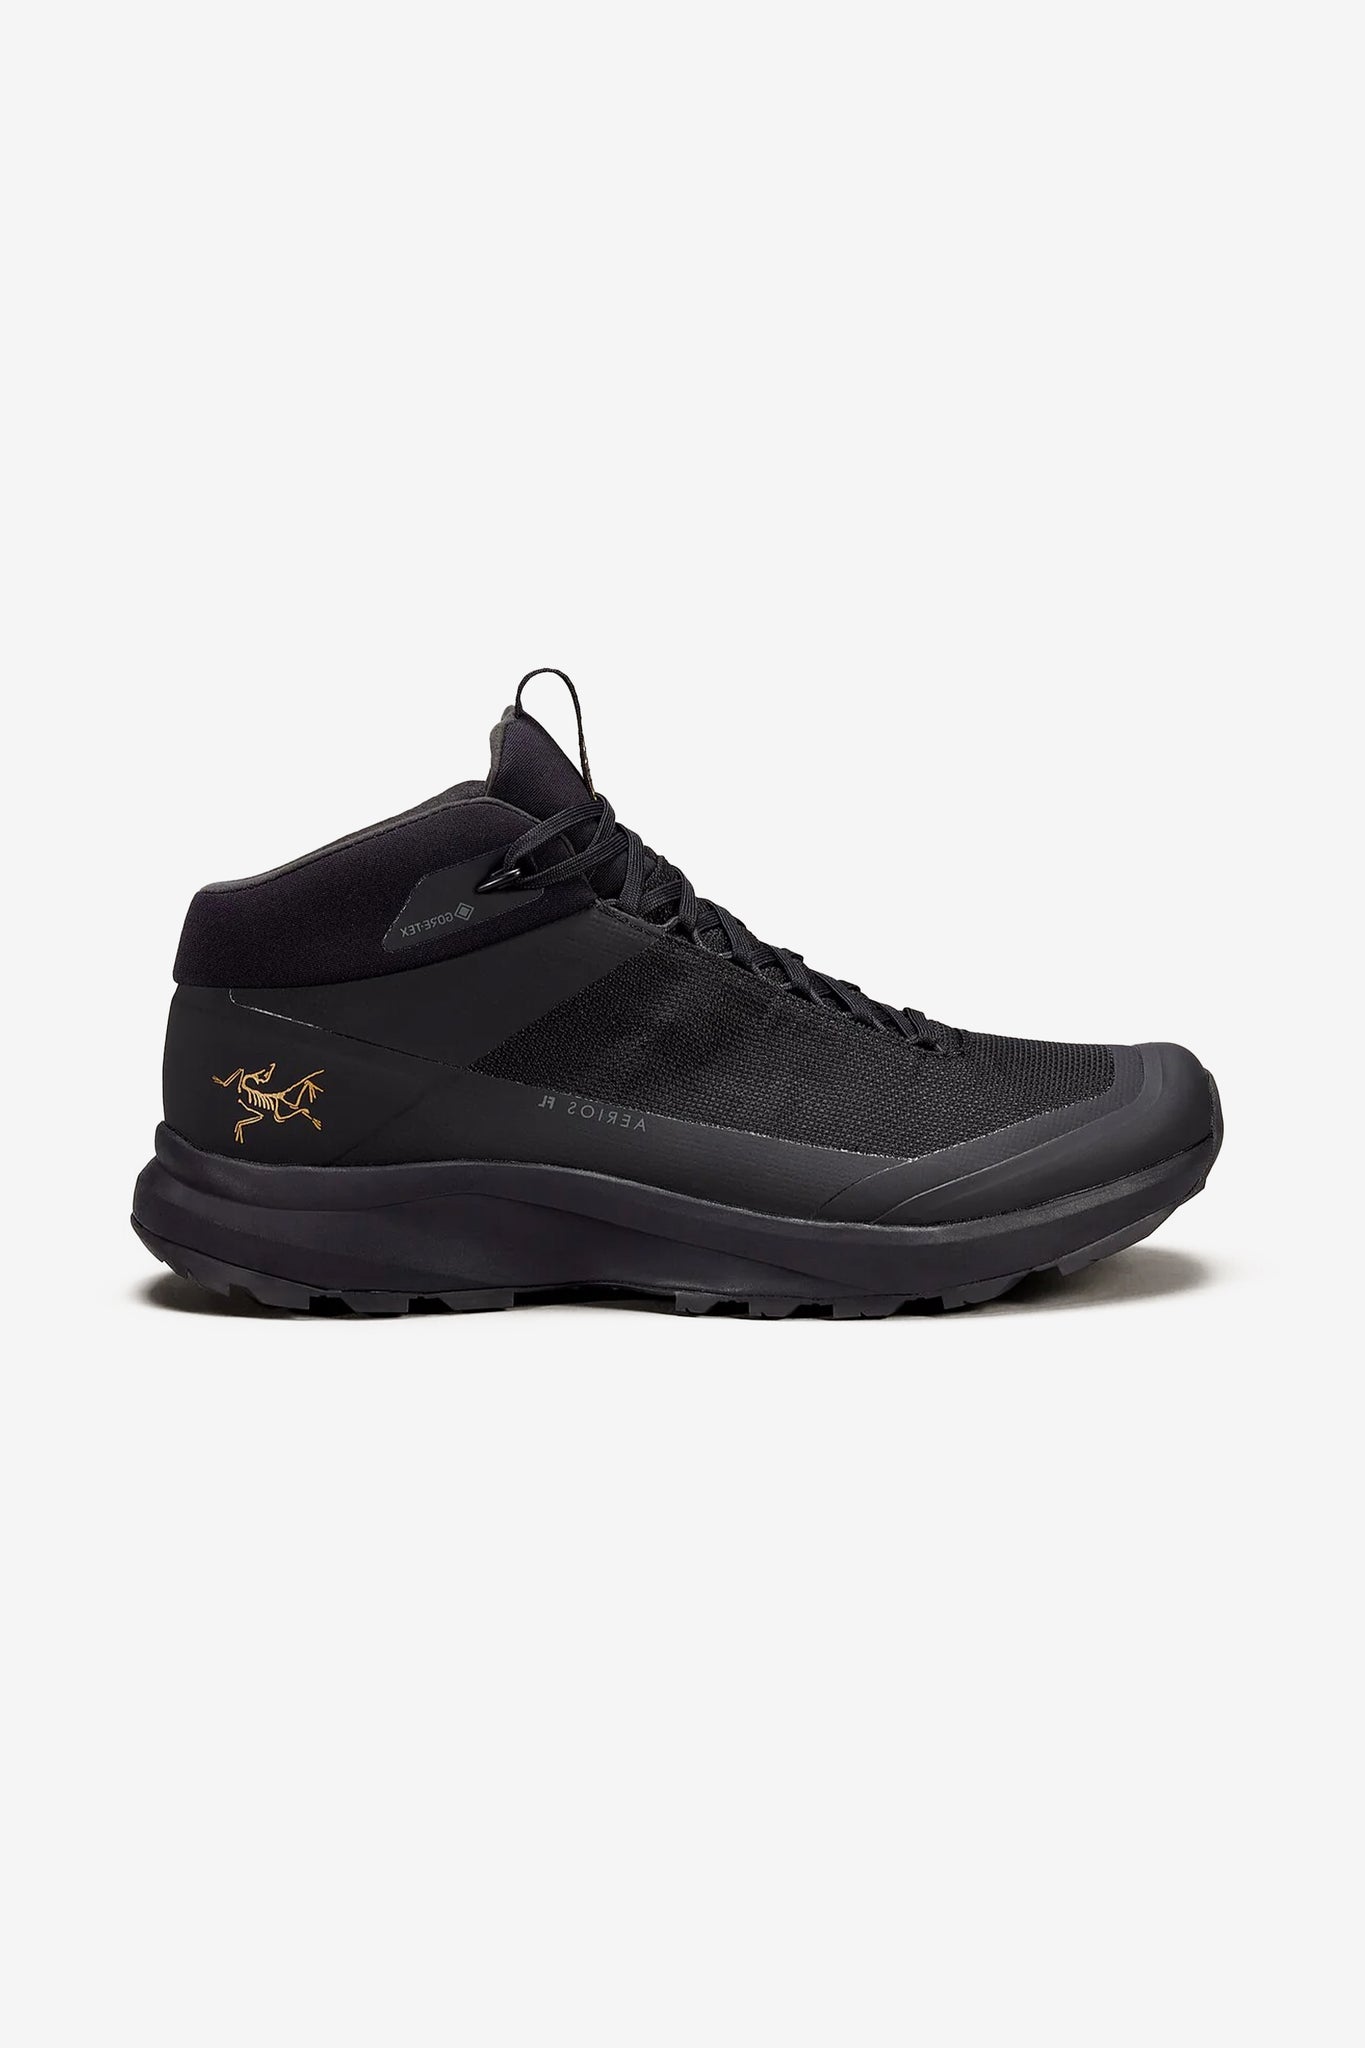 Arc'teryx Men's Aerios FL 2 Mid GTX Shoe in Black/Black